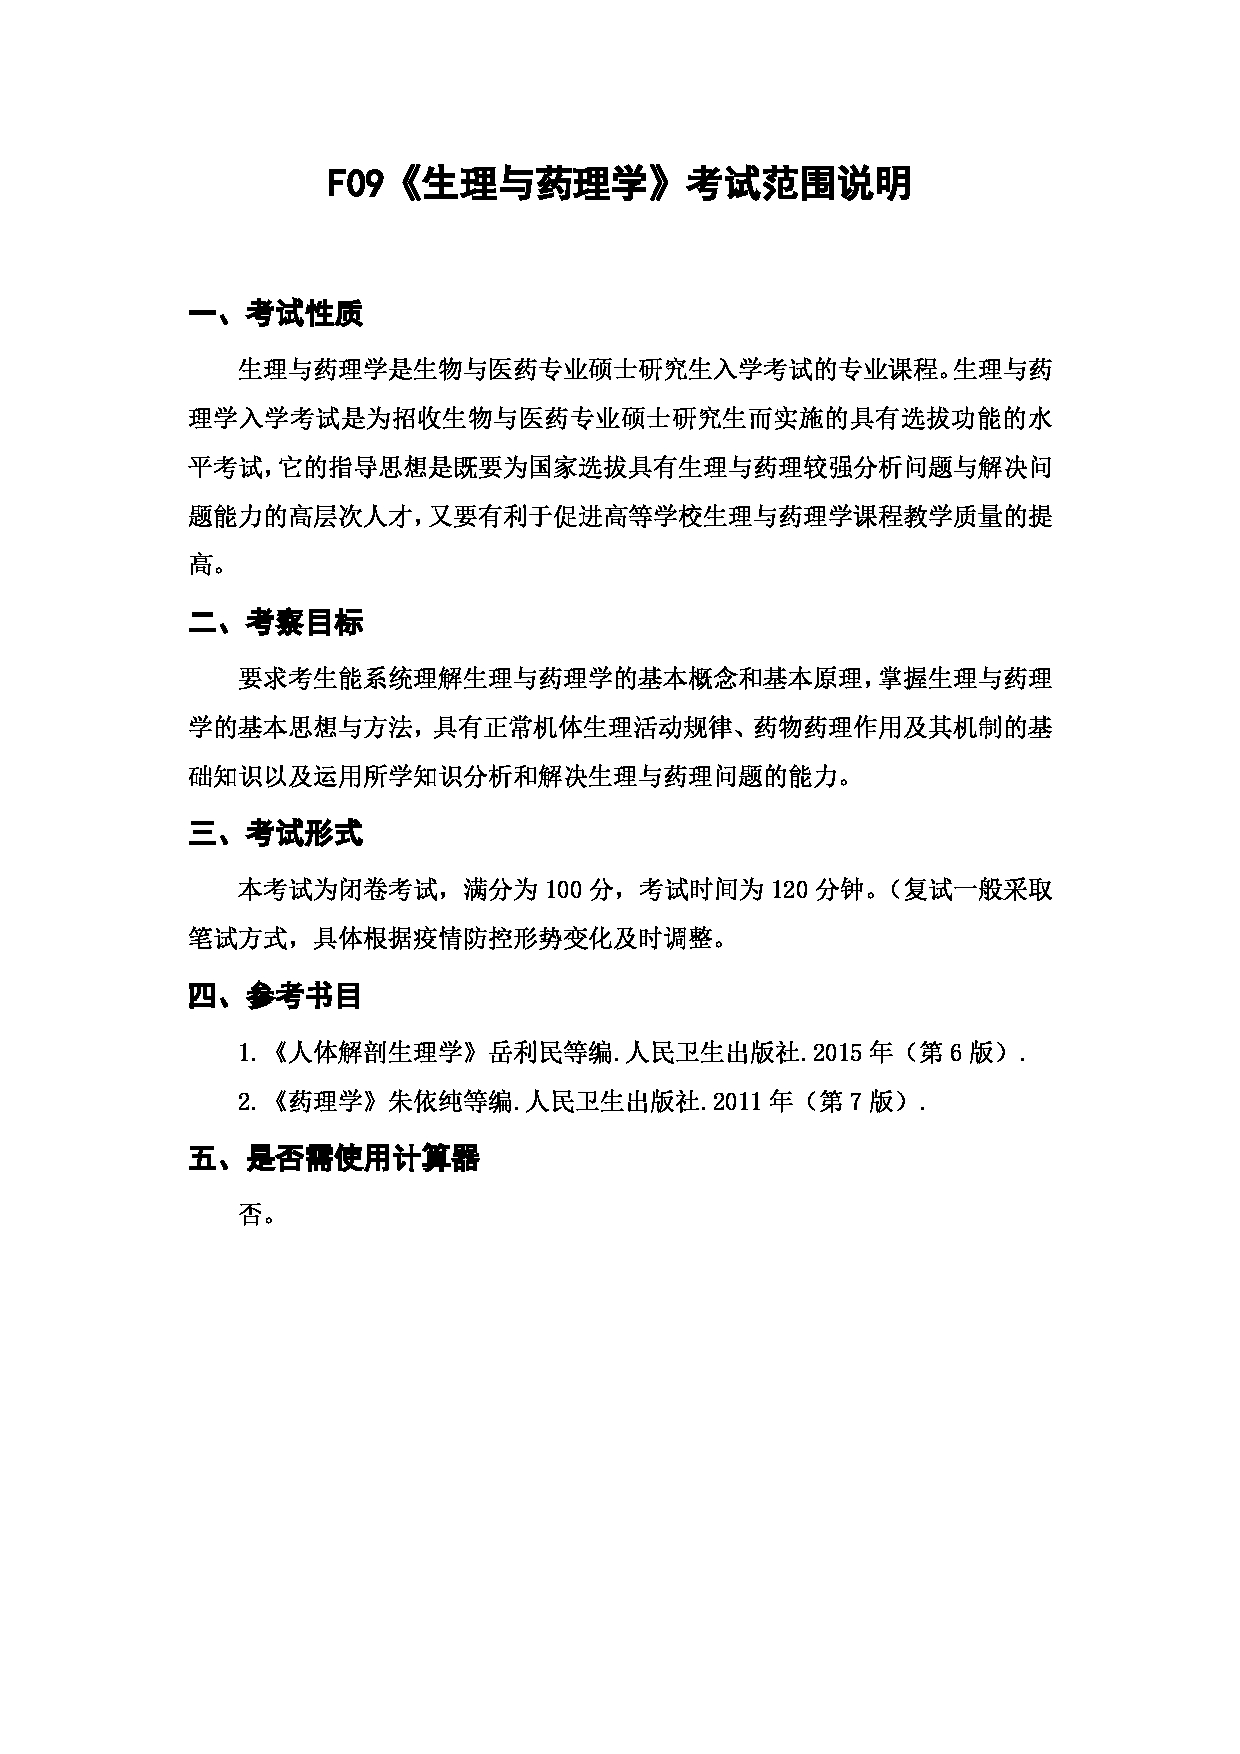 上海海洋大学2023年考研自命题科目 F09《生理与药理学》 考试范围第1页